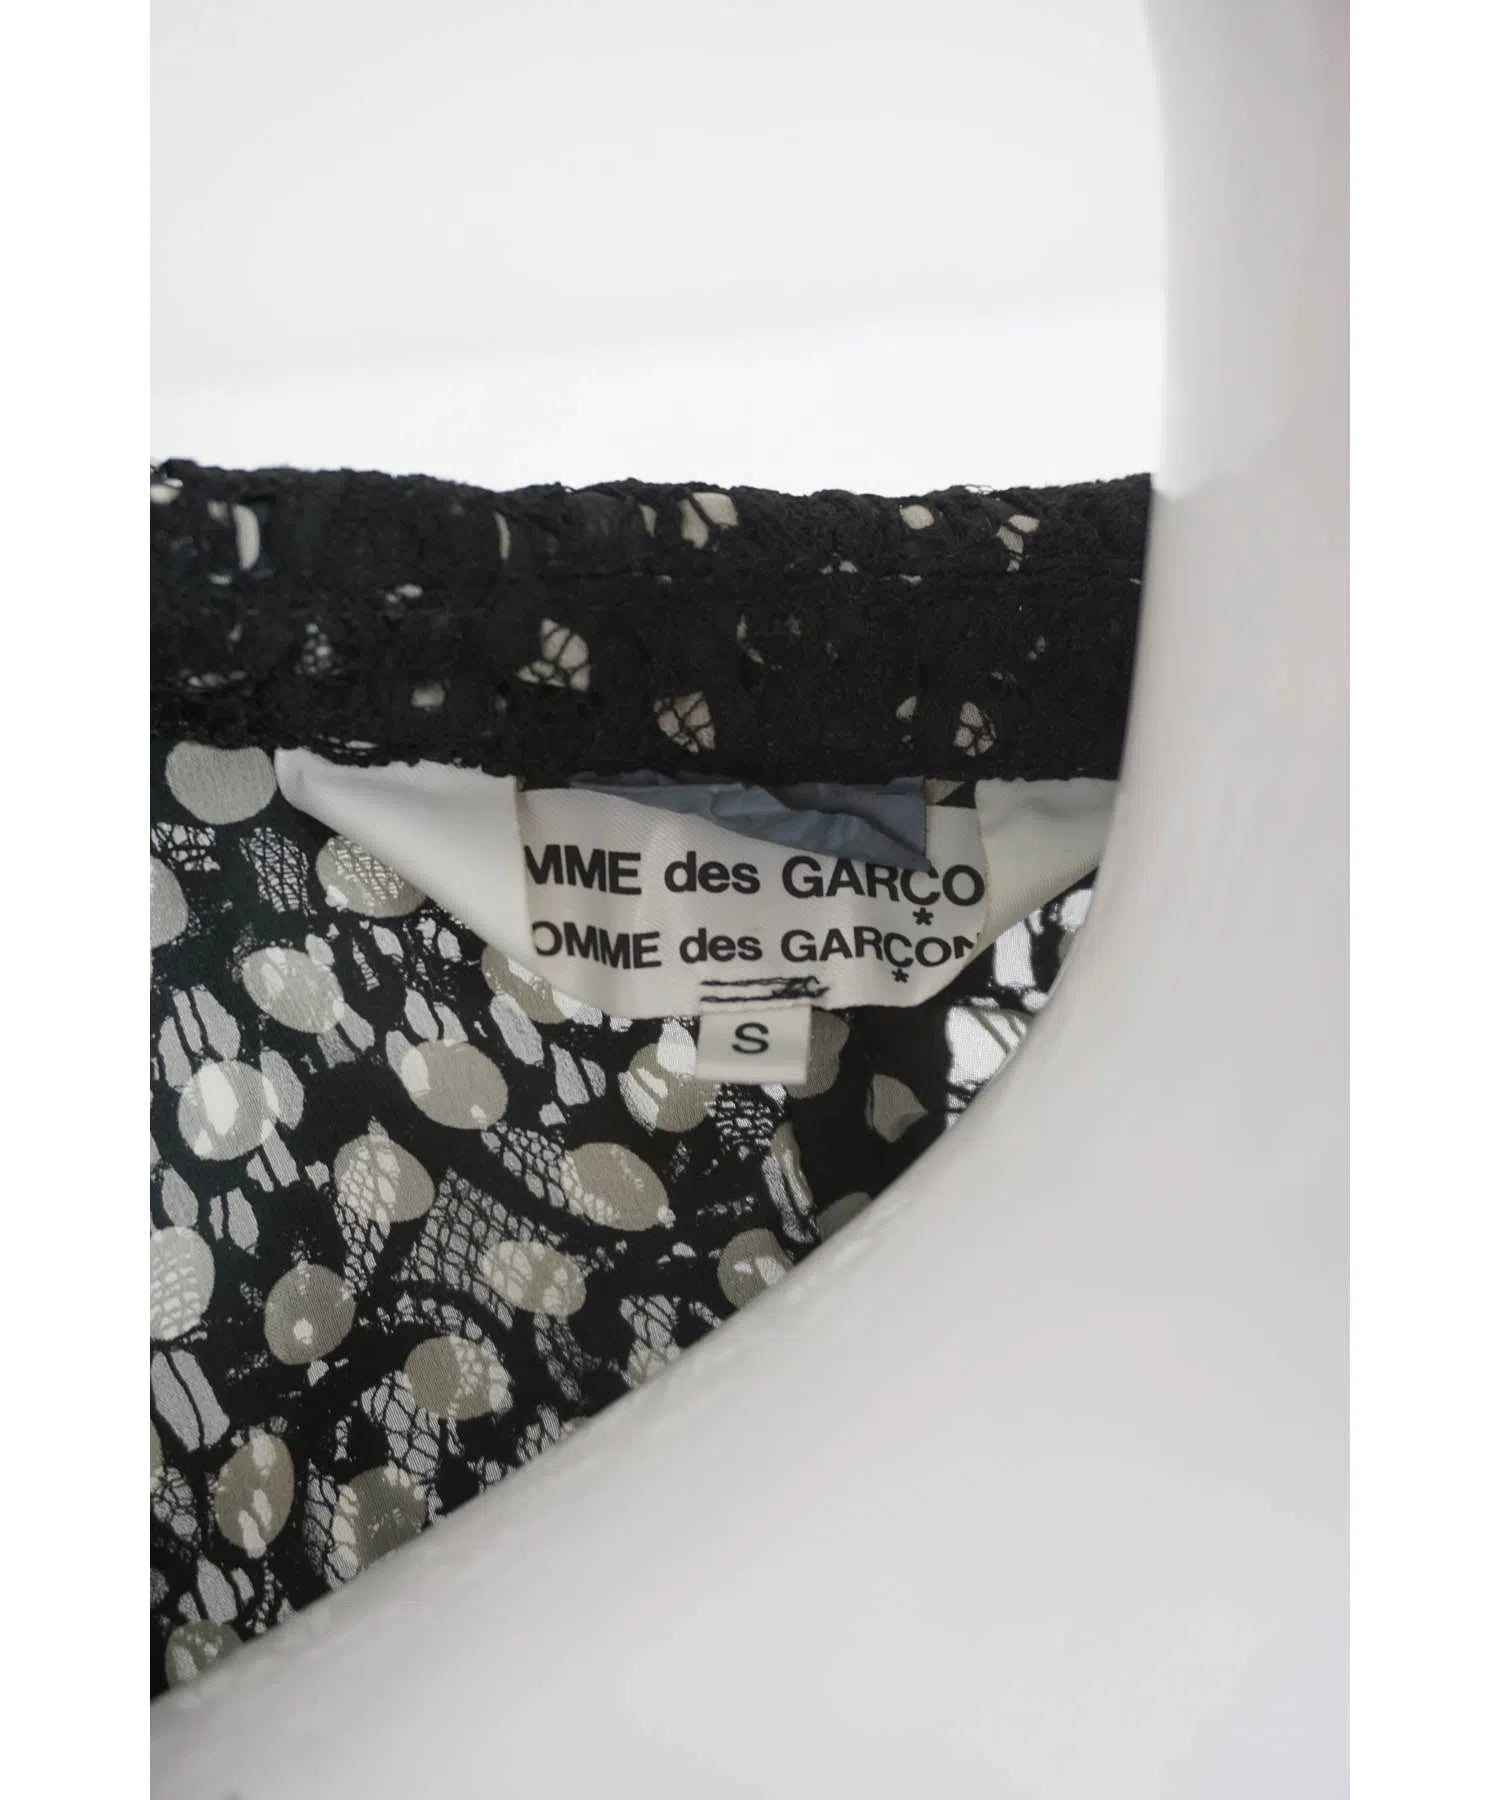 Comme Des Garcon Lace Jacket AD 2011 - Foxy Couture Carmel